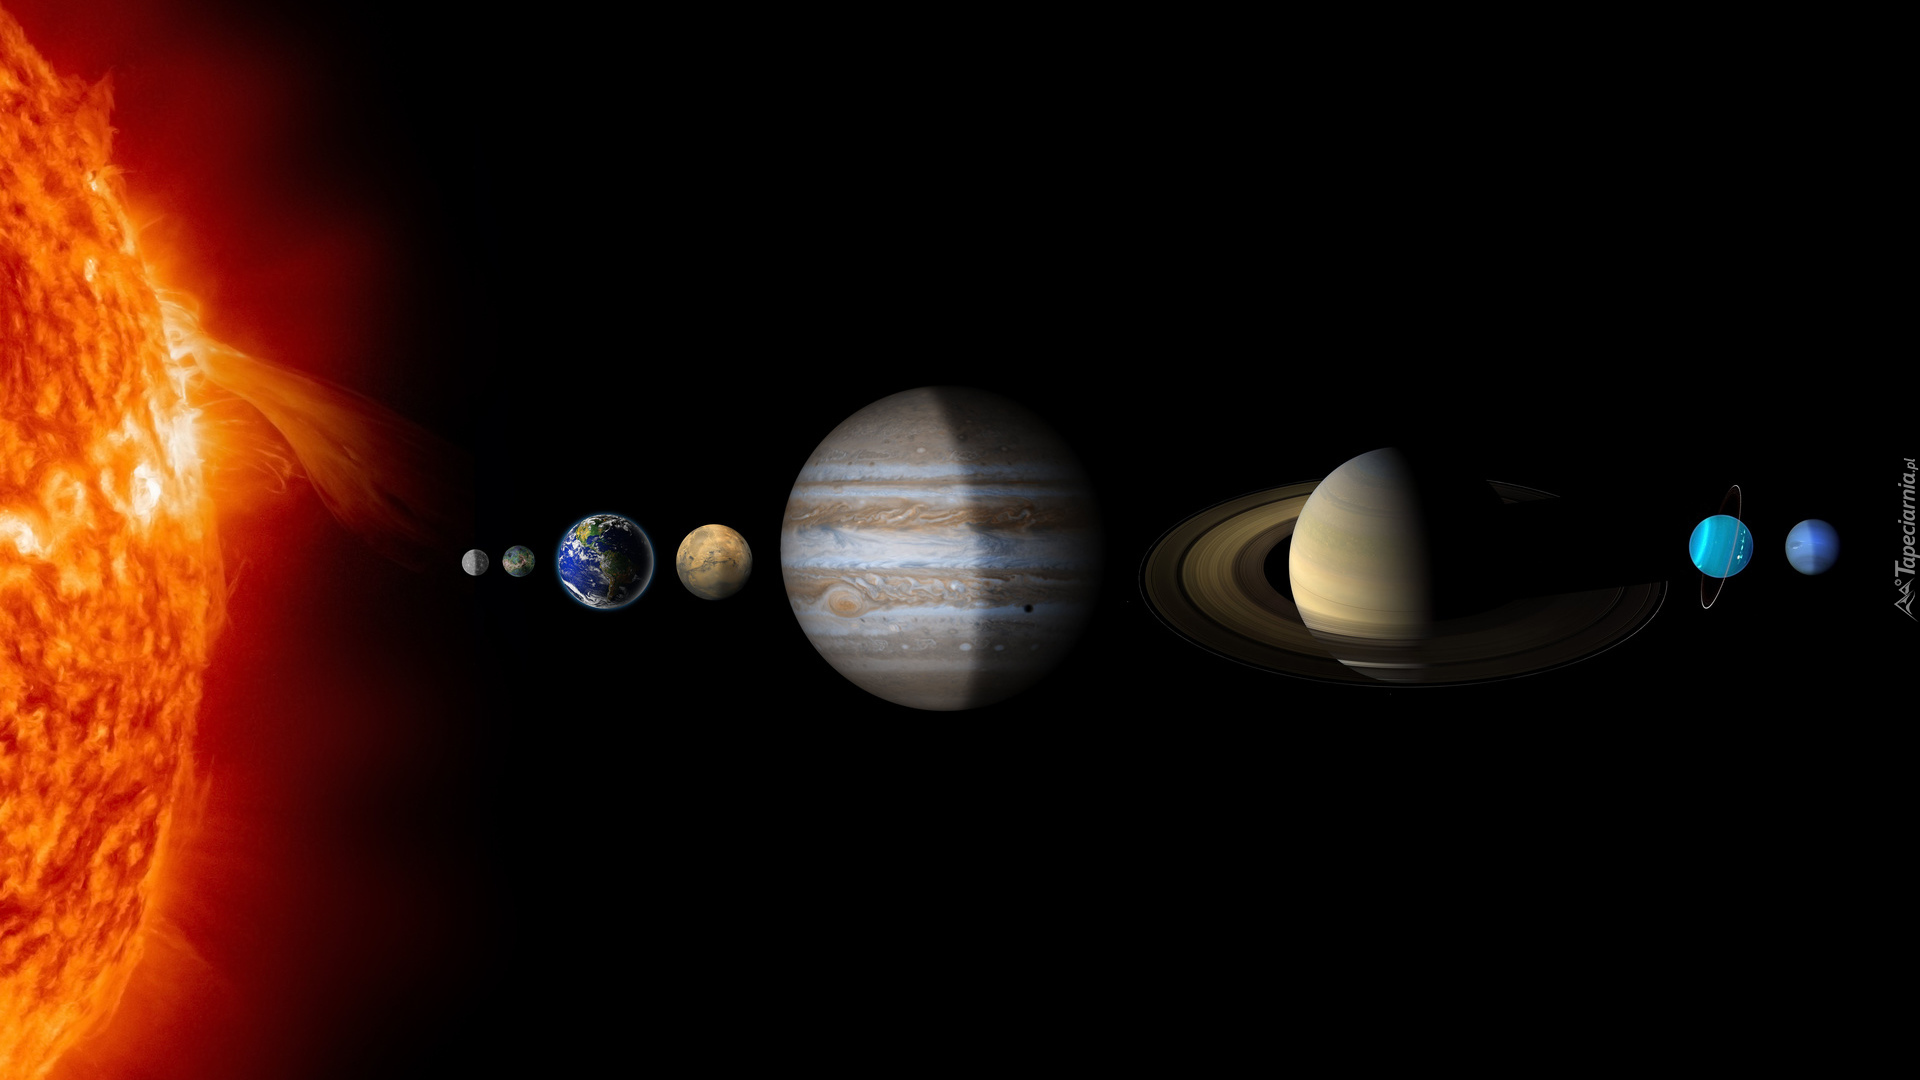 Układ słoneczny, Gwiazda, Słońce, Planety, Merkury, Wenus, Ziemia, Mars, Jowisz, Saturn, Uran, Neptun